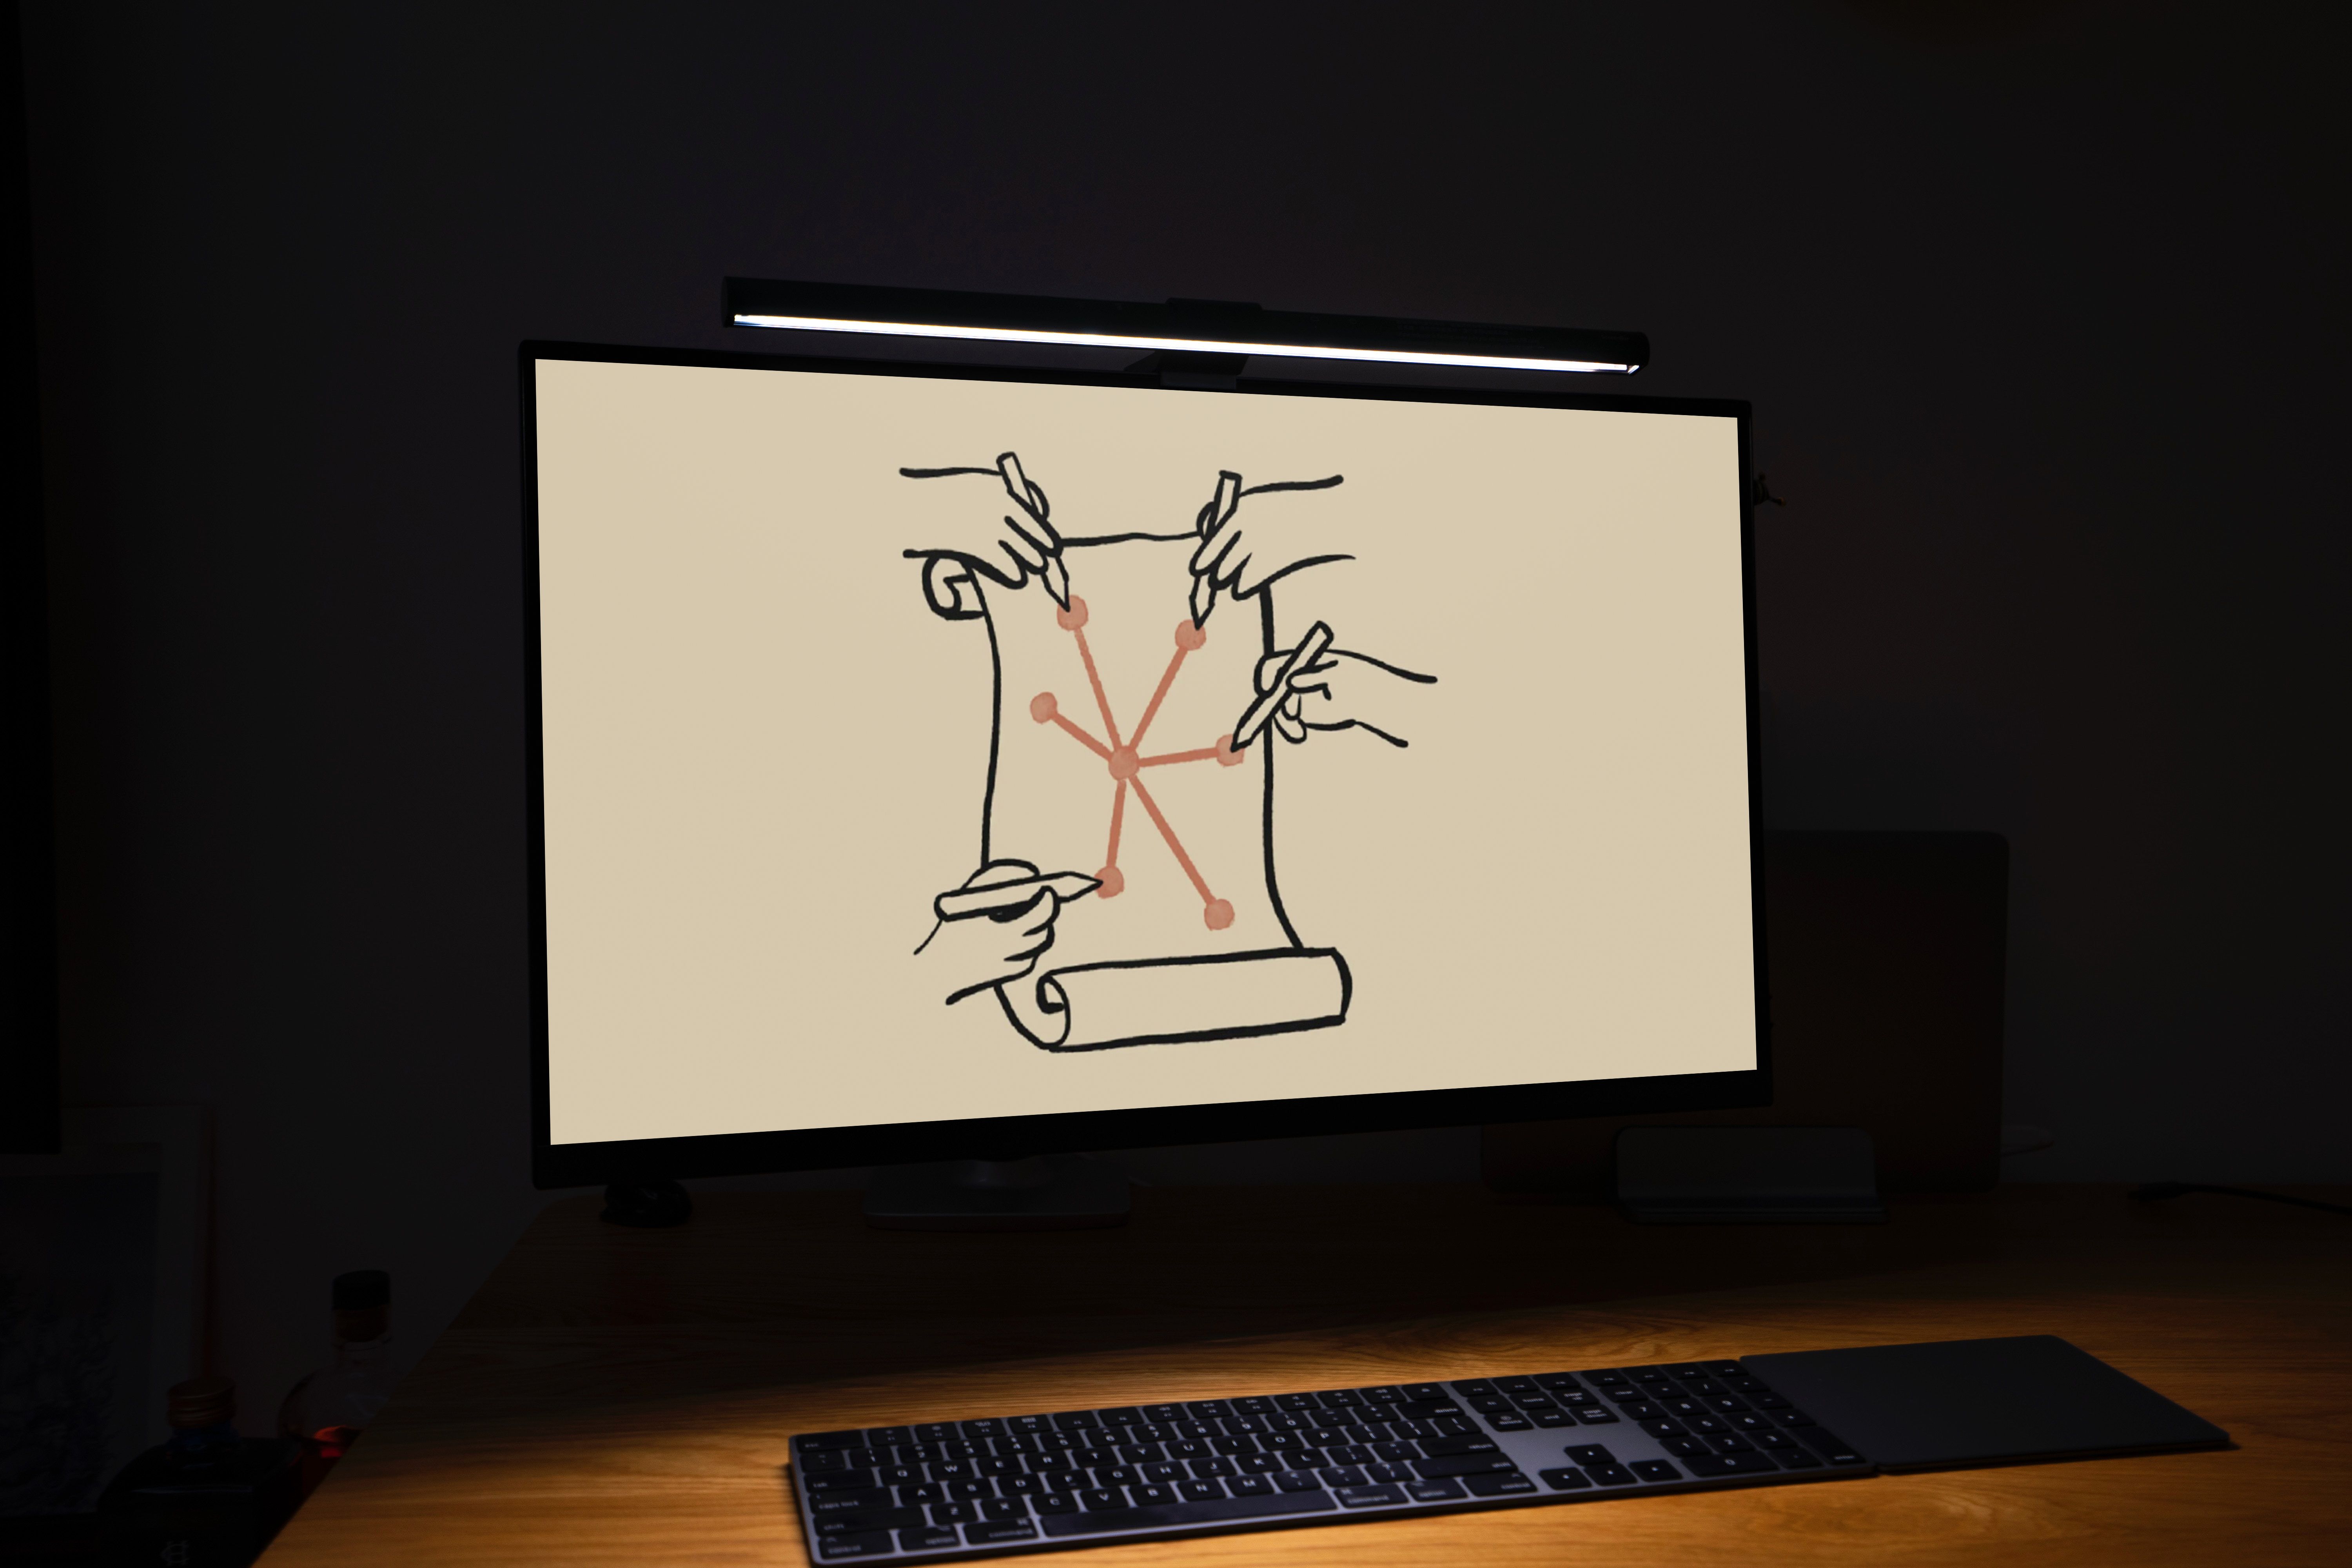 Um monitor em uma sala escura exibindo uma imagem desenhada à mão de quatro mãos desenhando em um pergaminho